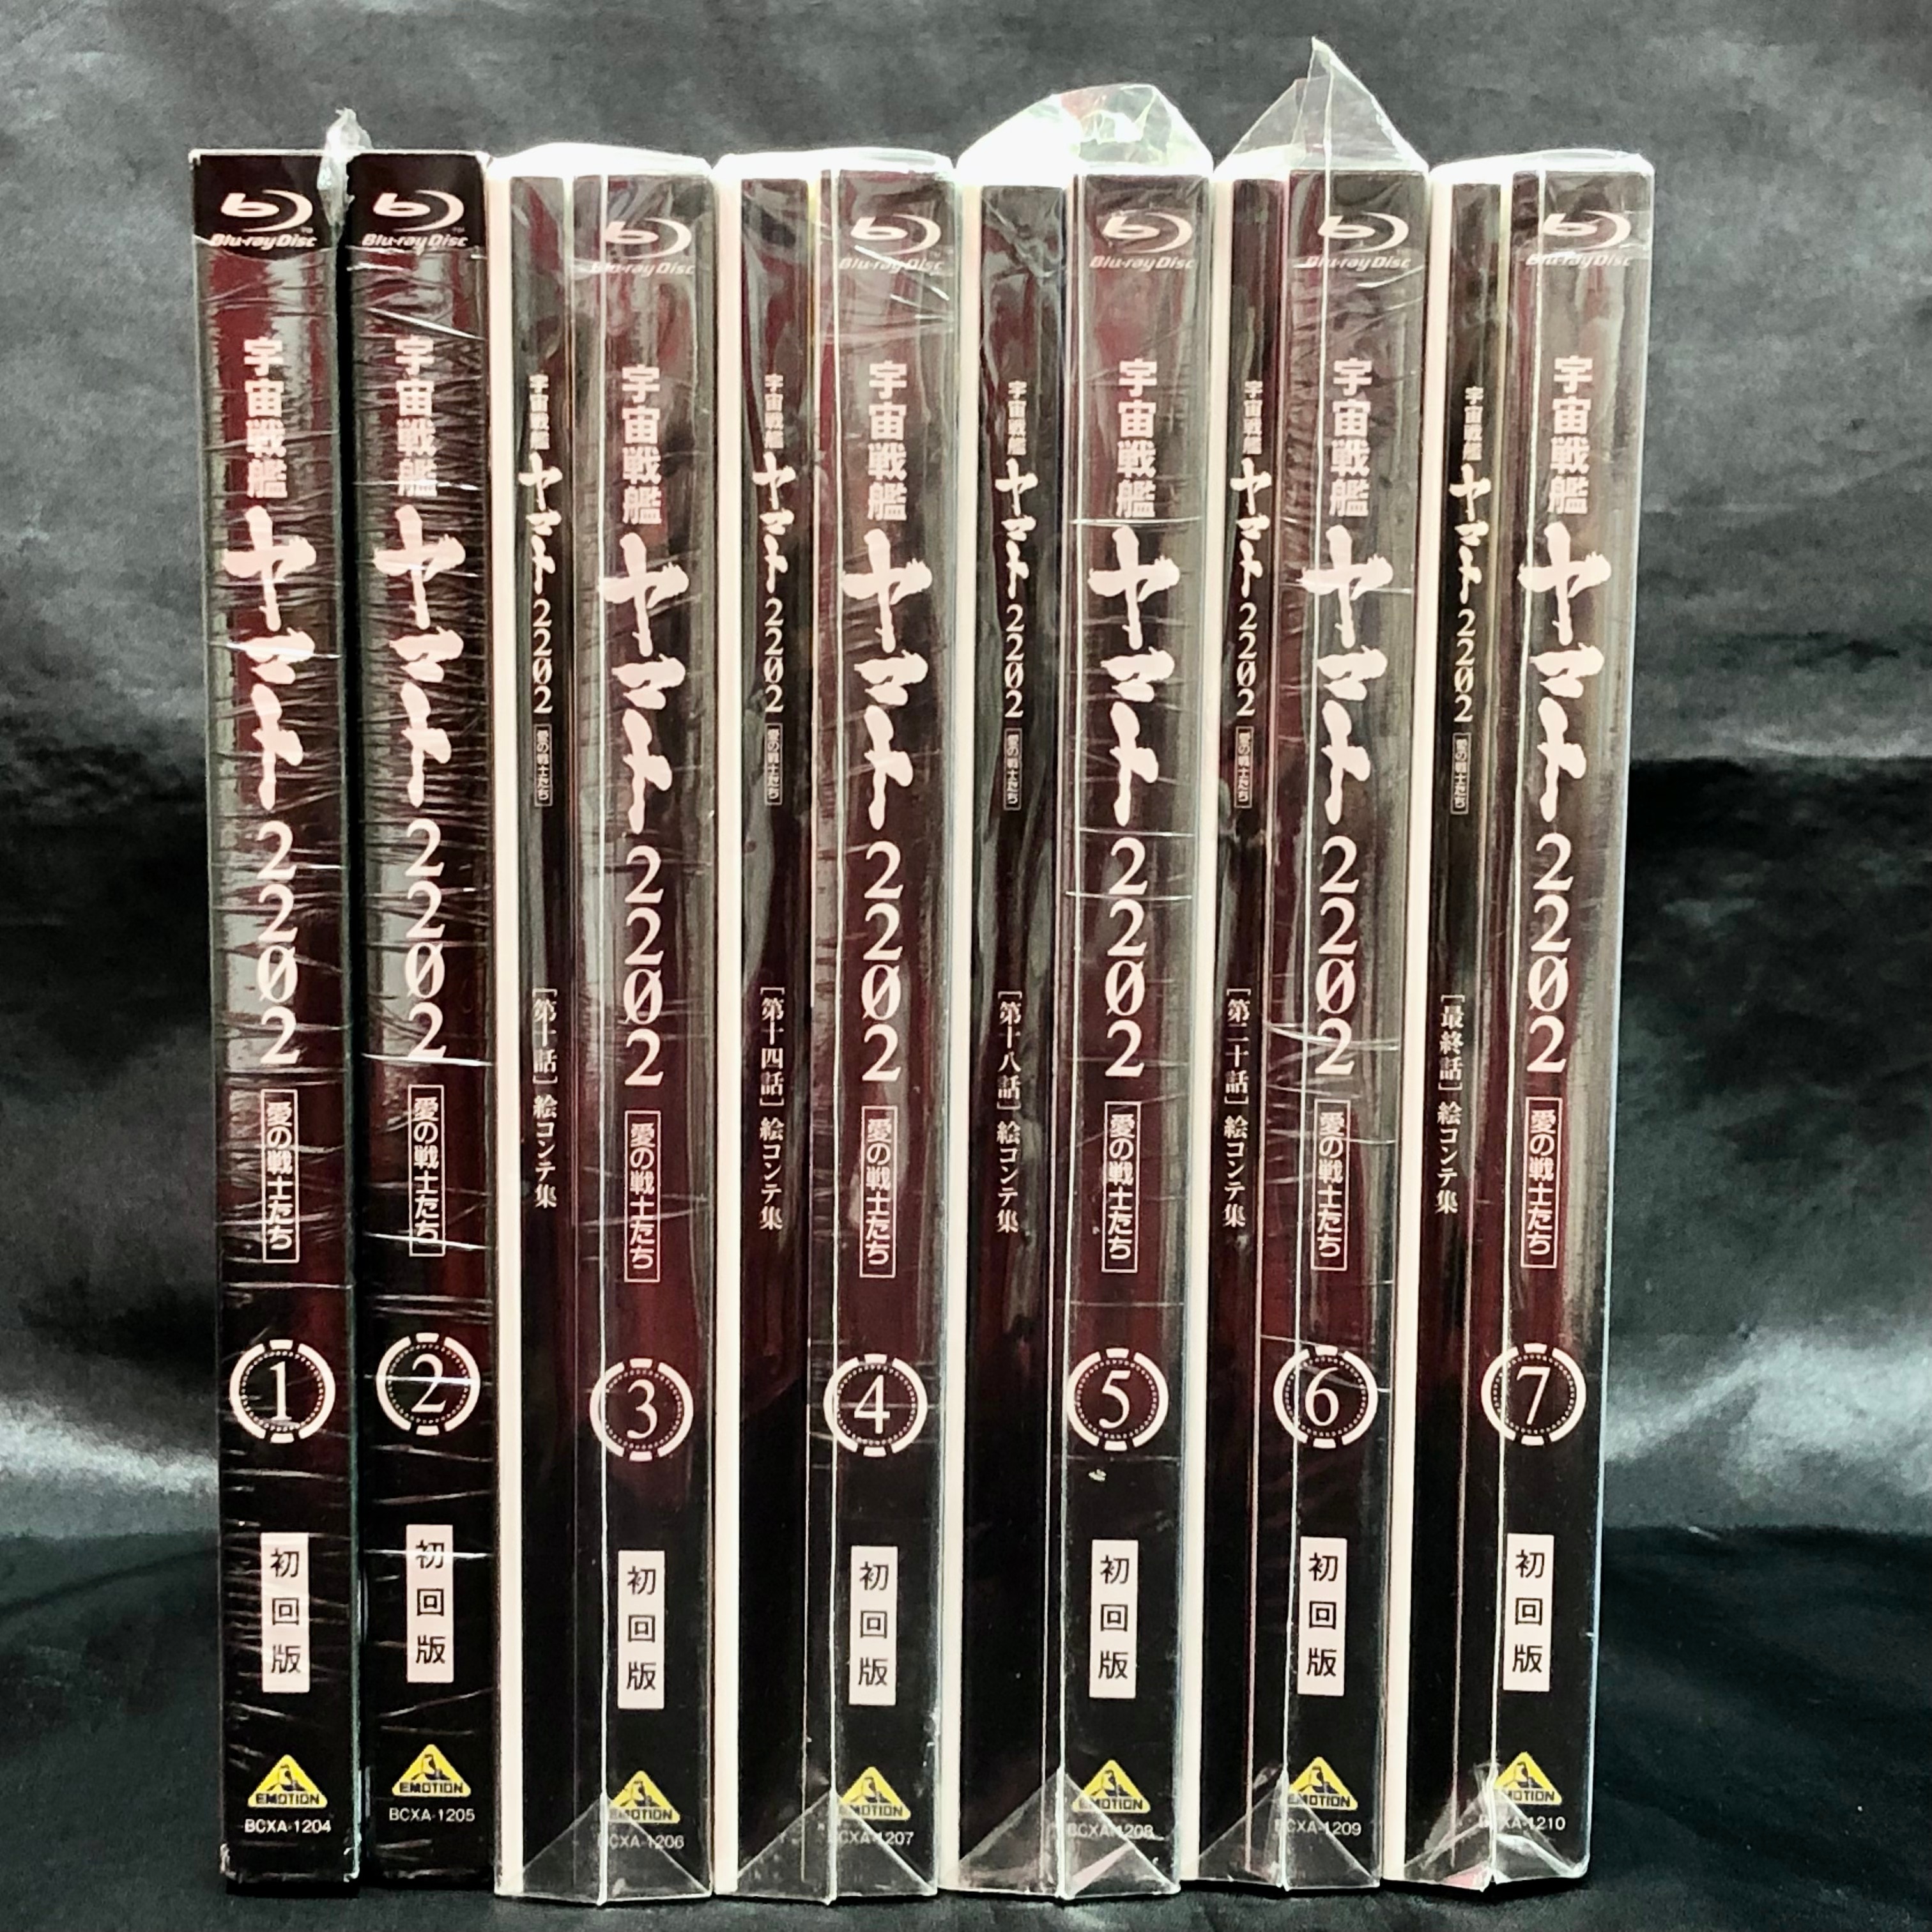 Blu-ray 宇宙戦艦ヤマト2202 初回版 全7巻セット